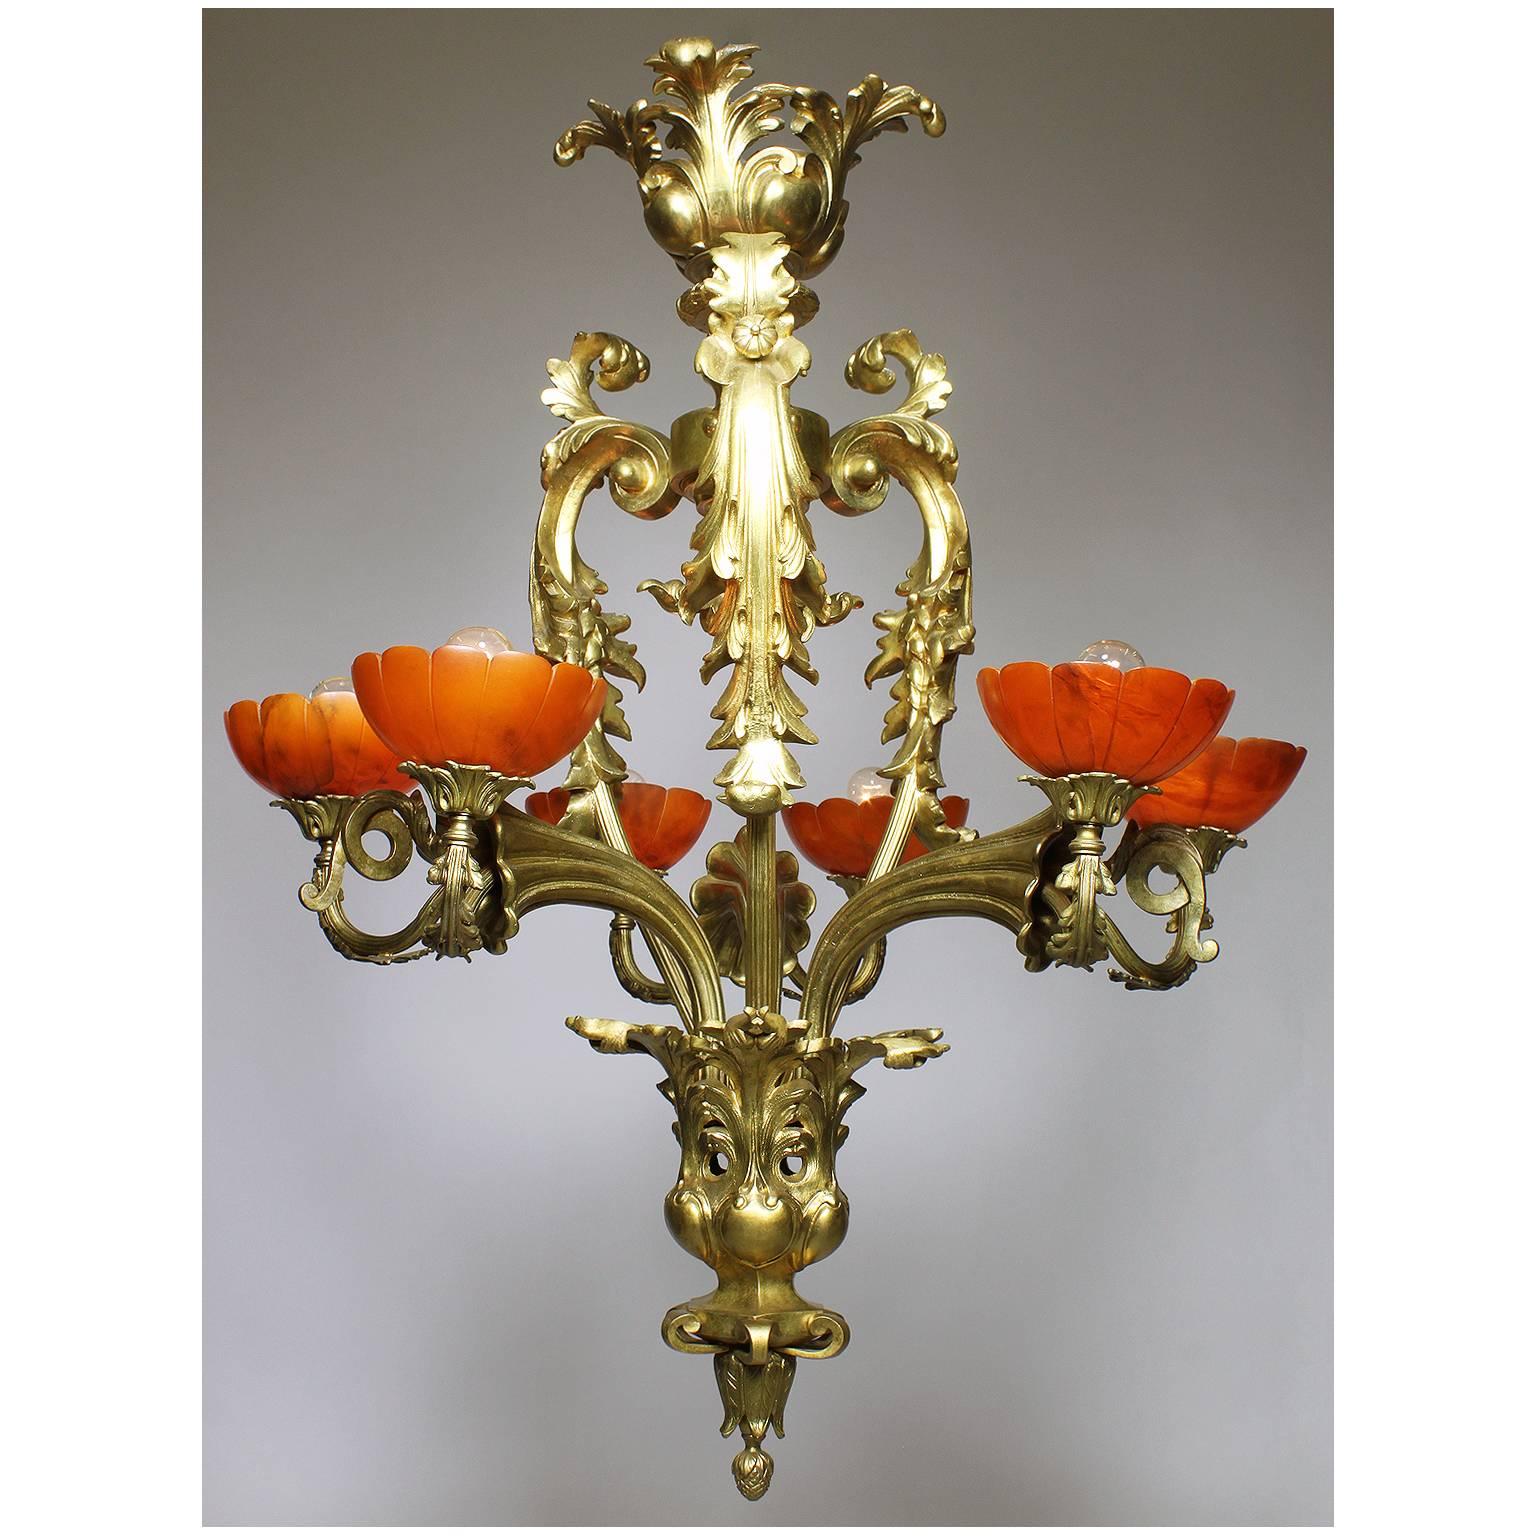 Ein feiner und seltener französischer Belle Époque-Kronleuchter des frühen 20. Jahrhunderts mit sechs Lichtern aus vergoldeter Bronze und rubinroten, geschnitzten Alabasterschirmen. Rahmen aus vergoldeter Bronze in Form eines Blumenbouquets mit drei